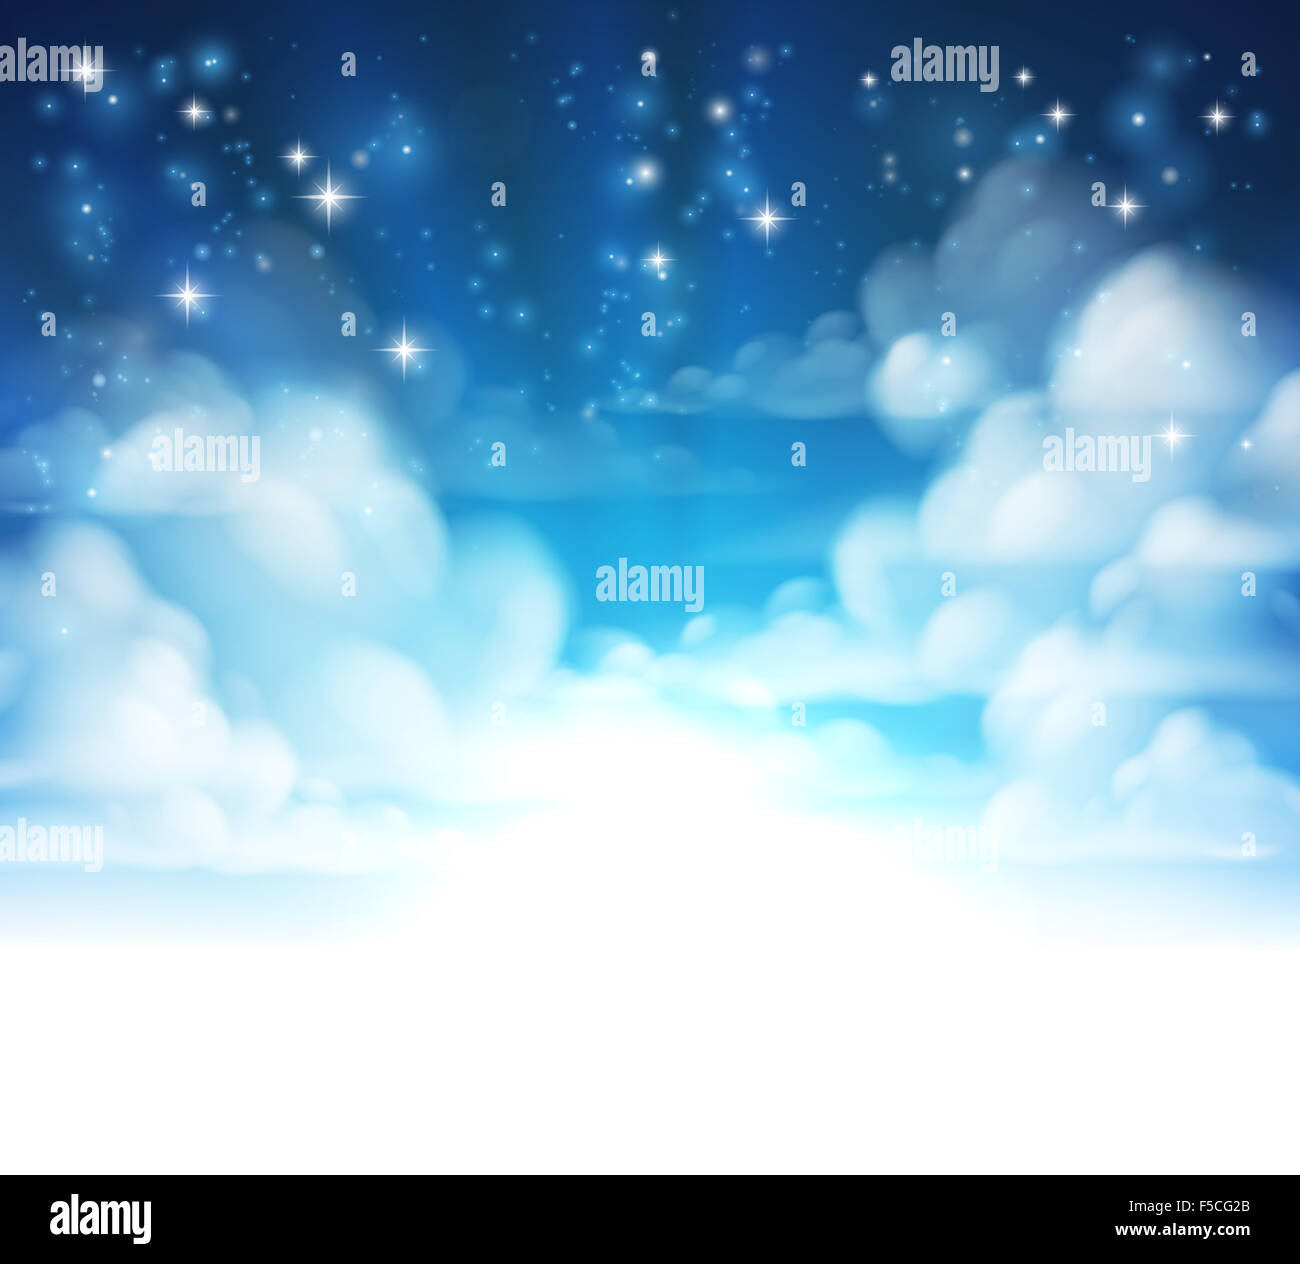 Himmelshintergrund mit Wolken und Sternen. Überblendungen in weiß auf der Unterseite für die einfache Nutzung als Bordürenmuster oder Header. Stockfoto